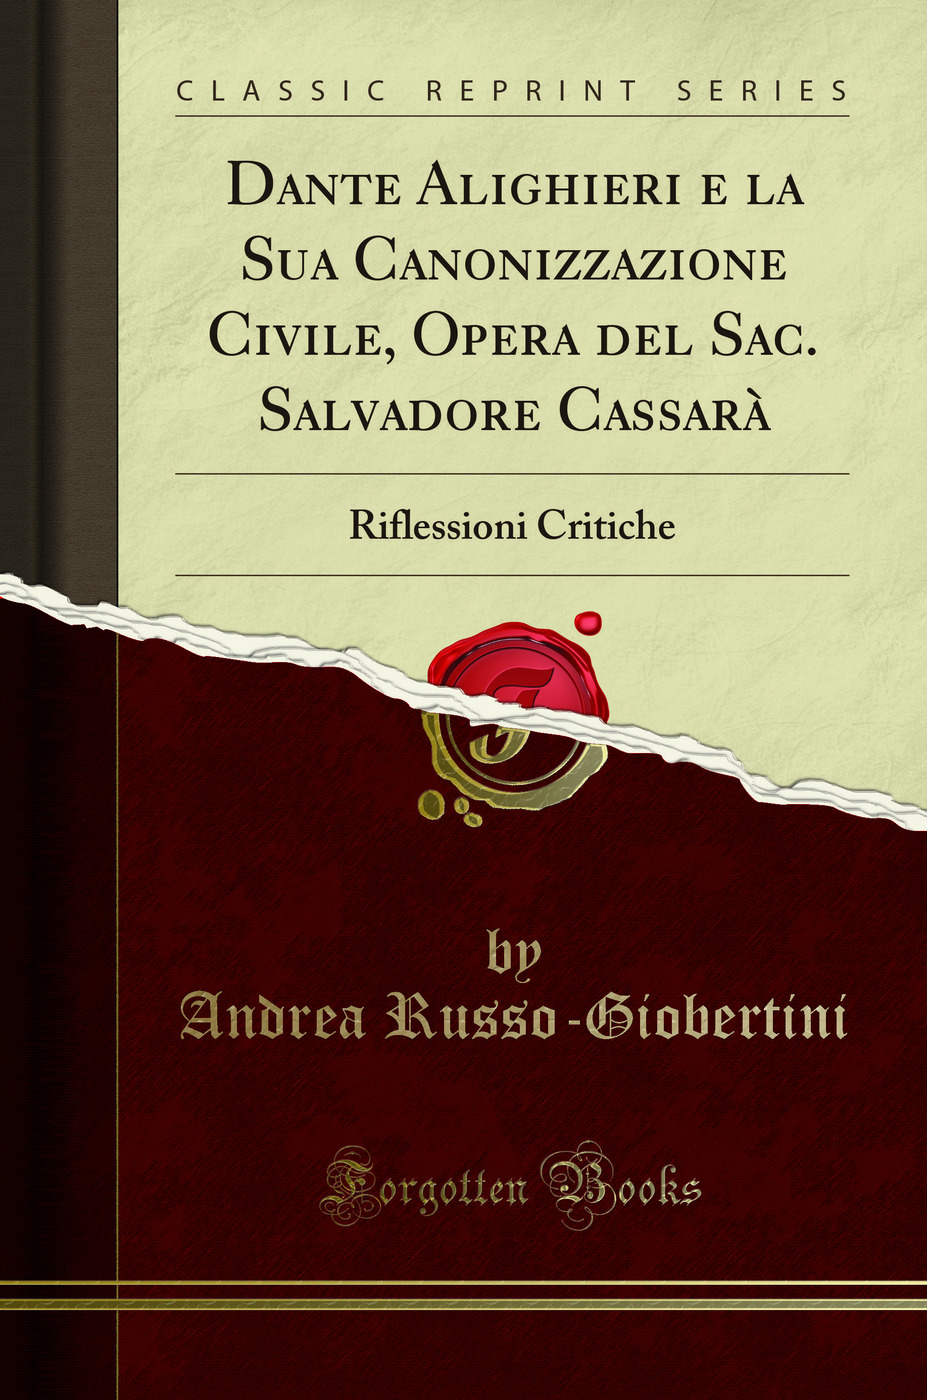 Dante Alighieri e la Sua Canonizzazione Civile, Opera del Sac (Classic Reprint) - Andrea Russo-Giobertini